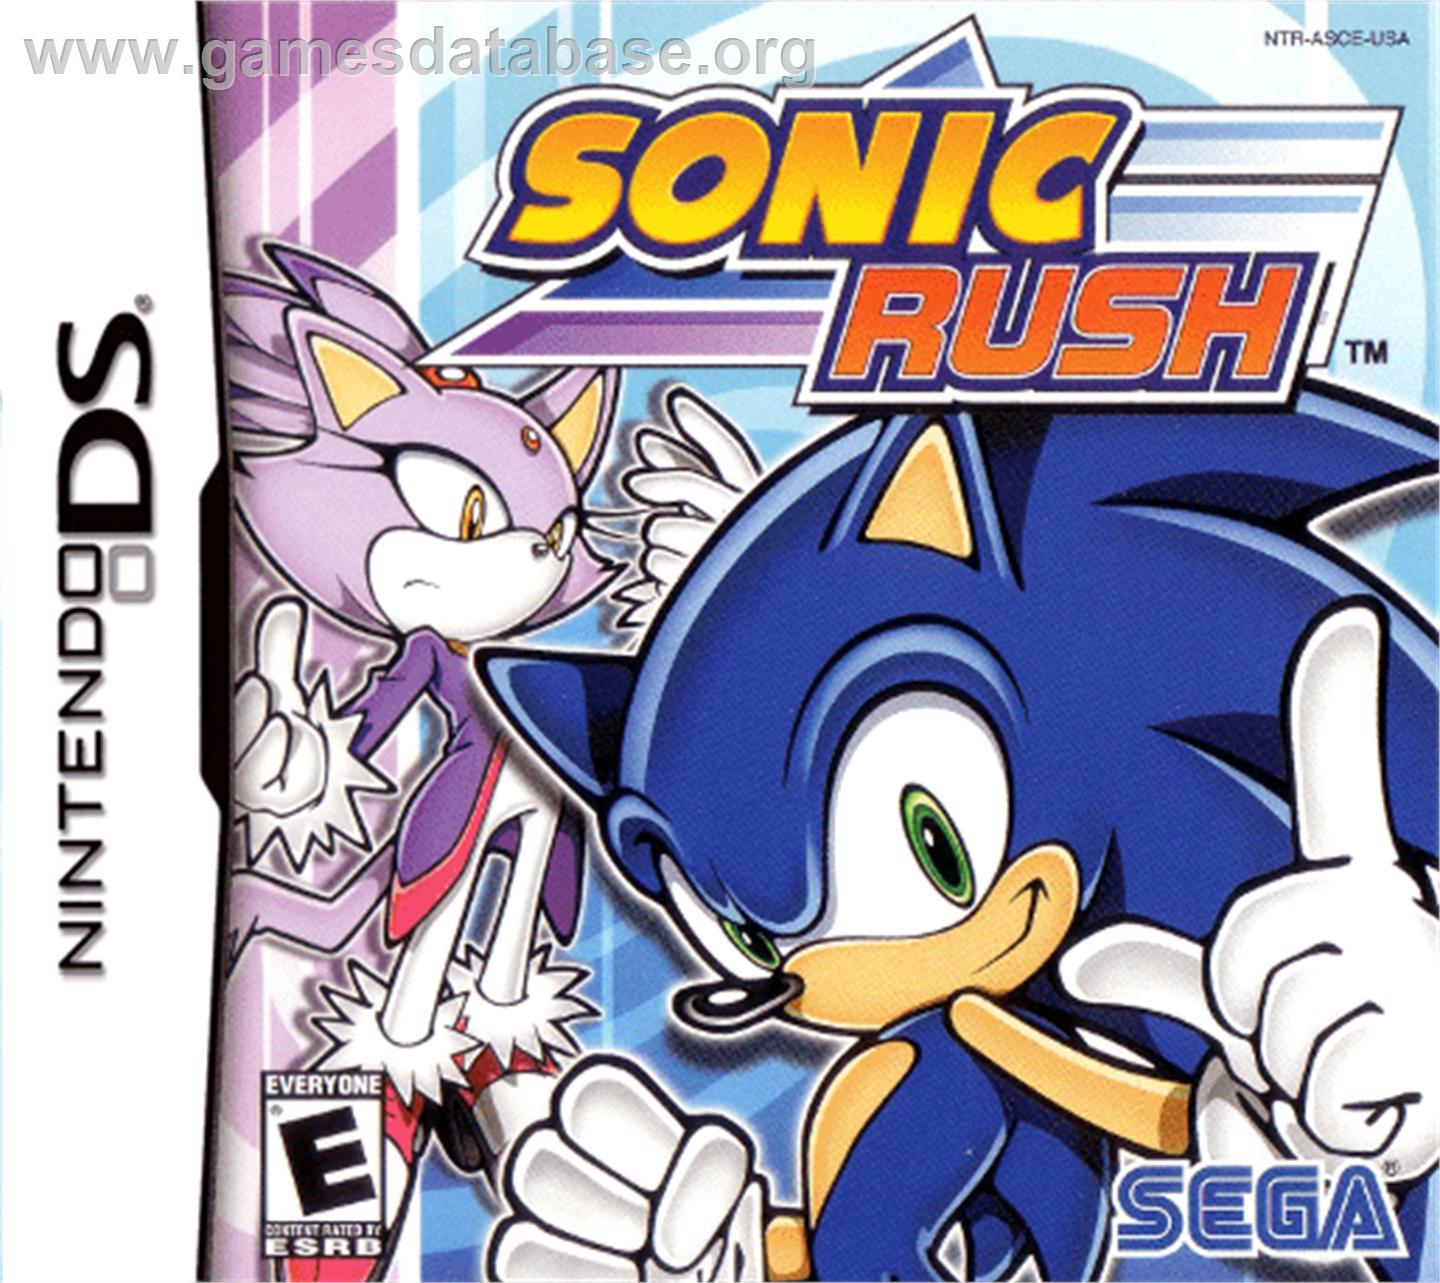 Sonic Rush - Nintendo DS - Artwork - Box